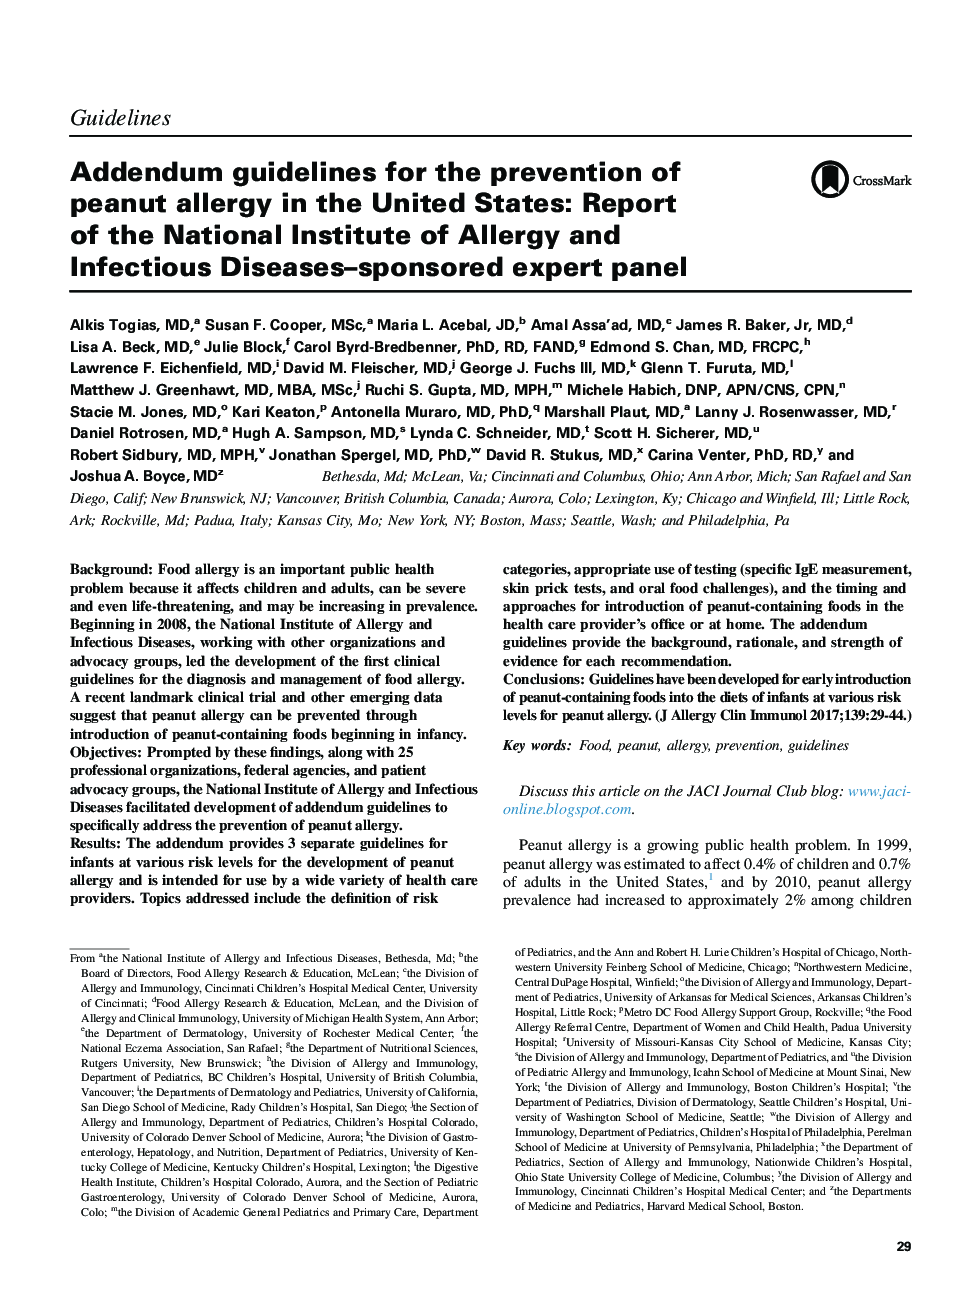 رهنمودها در مورد پیشگیری از آلرژی بادام زمینی در ایالات متحده: گزارش مؤسسه ملی آلرژی و بیماری های عفونی - حمایت از گروه متخصص 